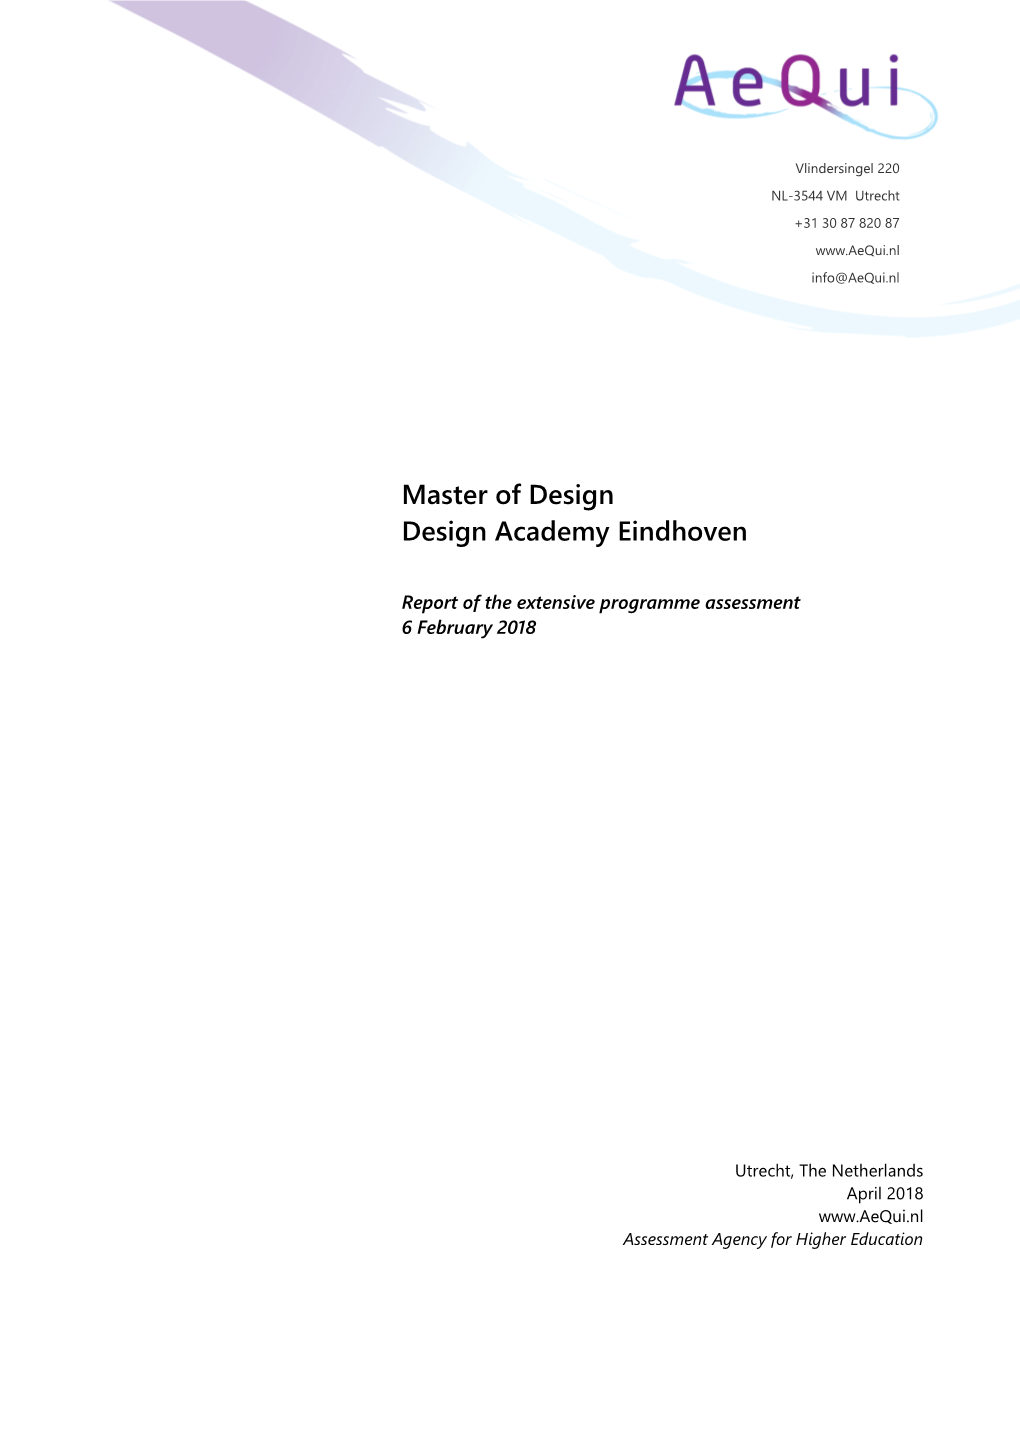 Master of Design Design Academy Eindhoven